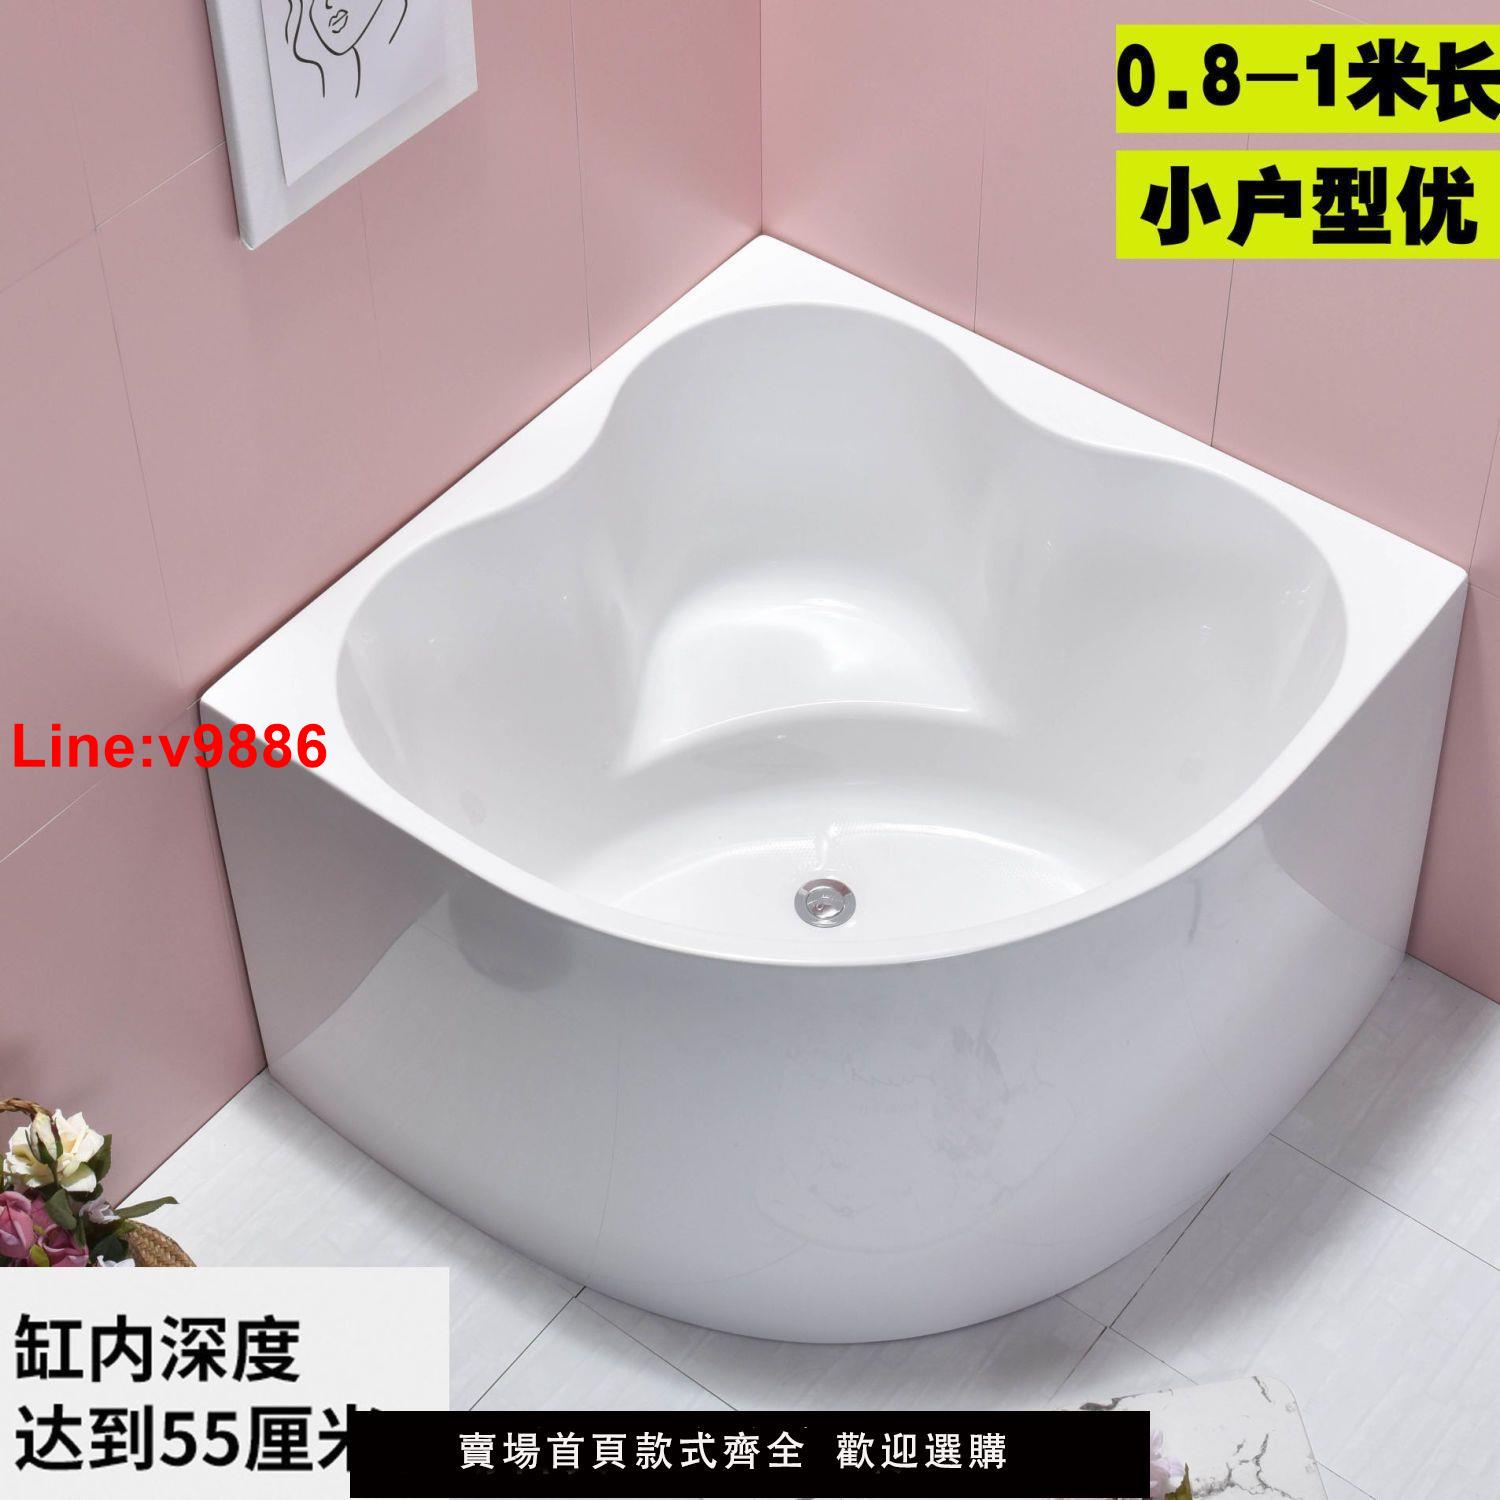 【台灣公司 超低價】亞克力三角形扇形無縫浴缸迷你家用小戶型超深直角浴盆池0.8米1米